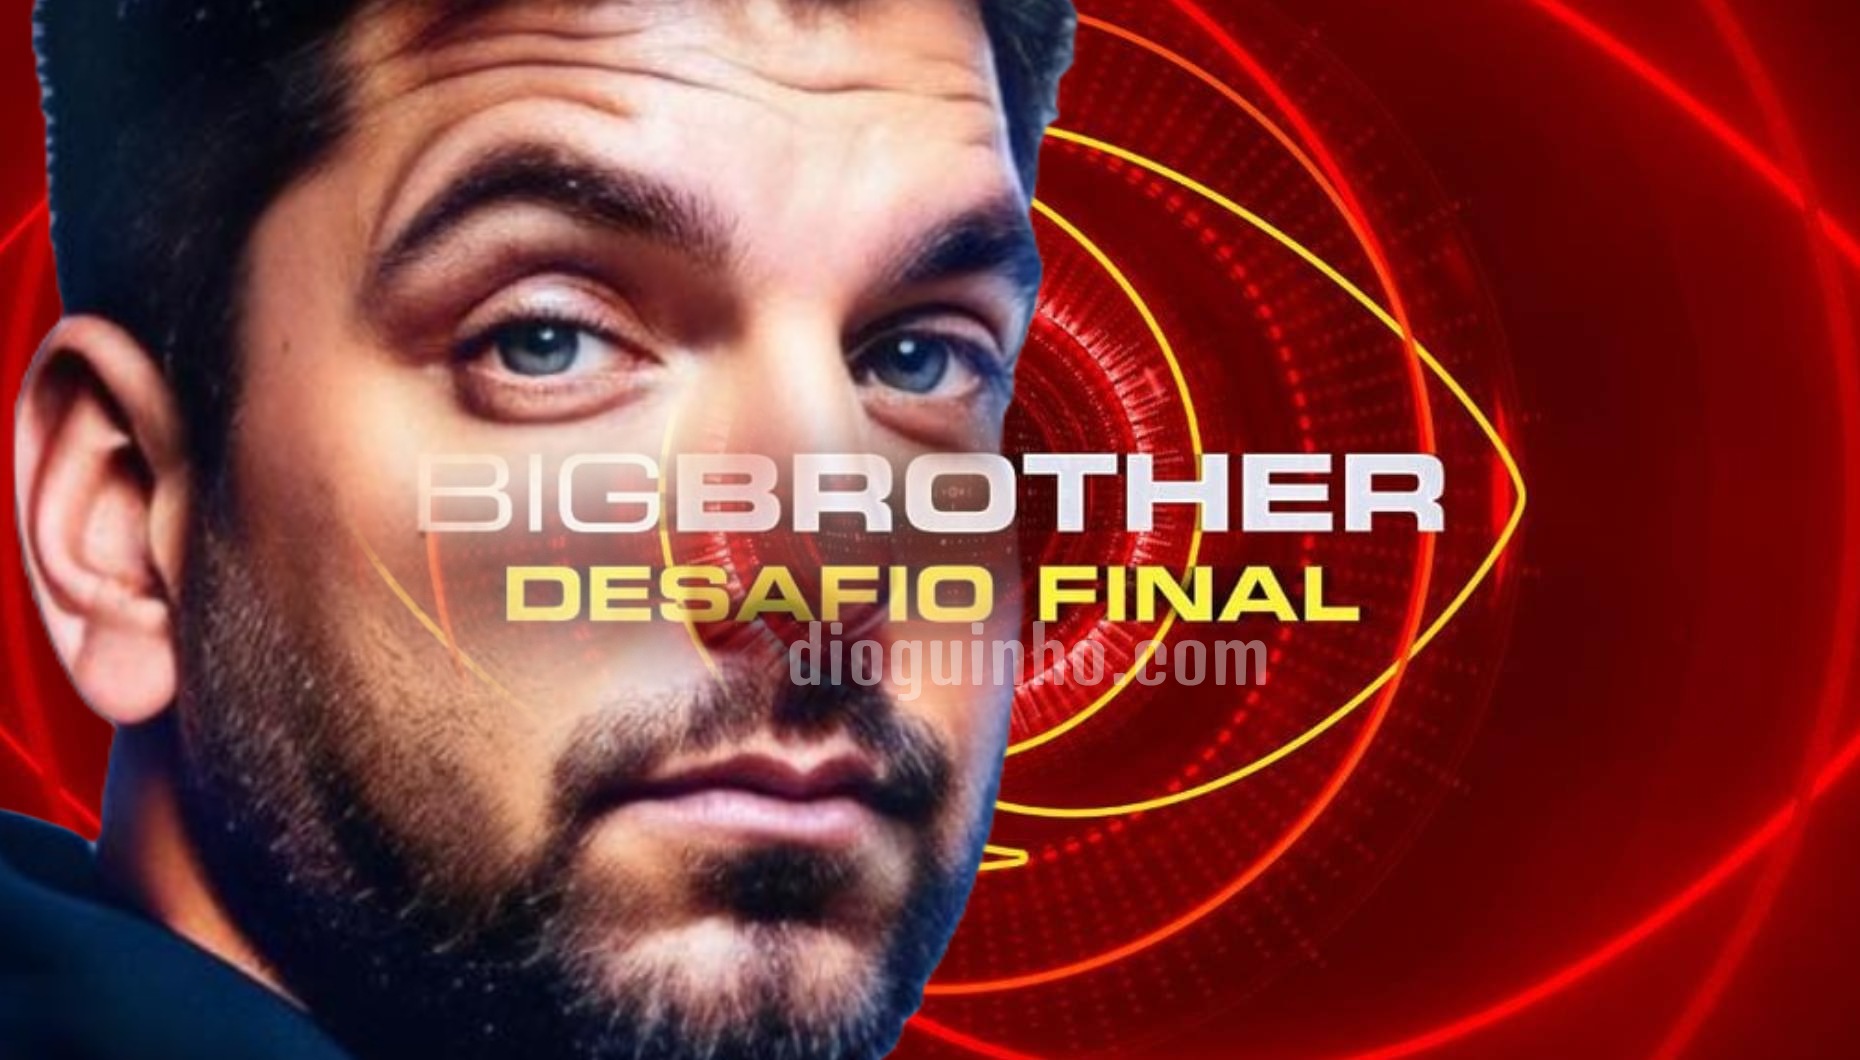 Wilson Teixeira - Big Brother Desafio Final - Wilson Teixeira como concorrente do Big Brother Desafio Final: "Não queria dar Leak"